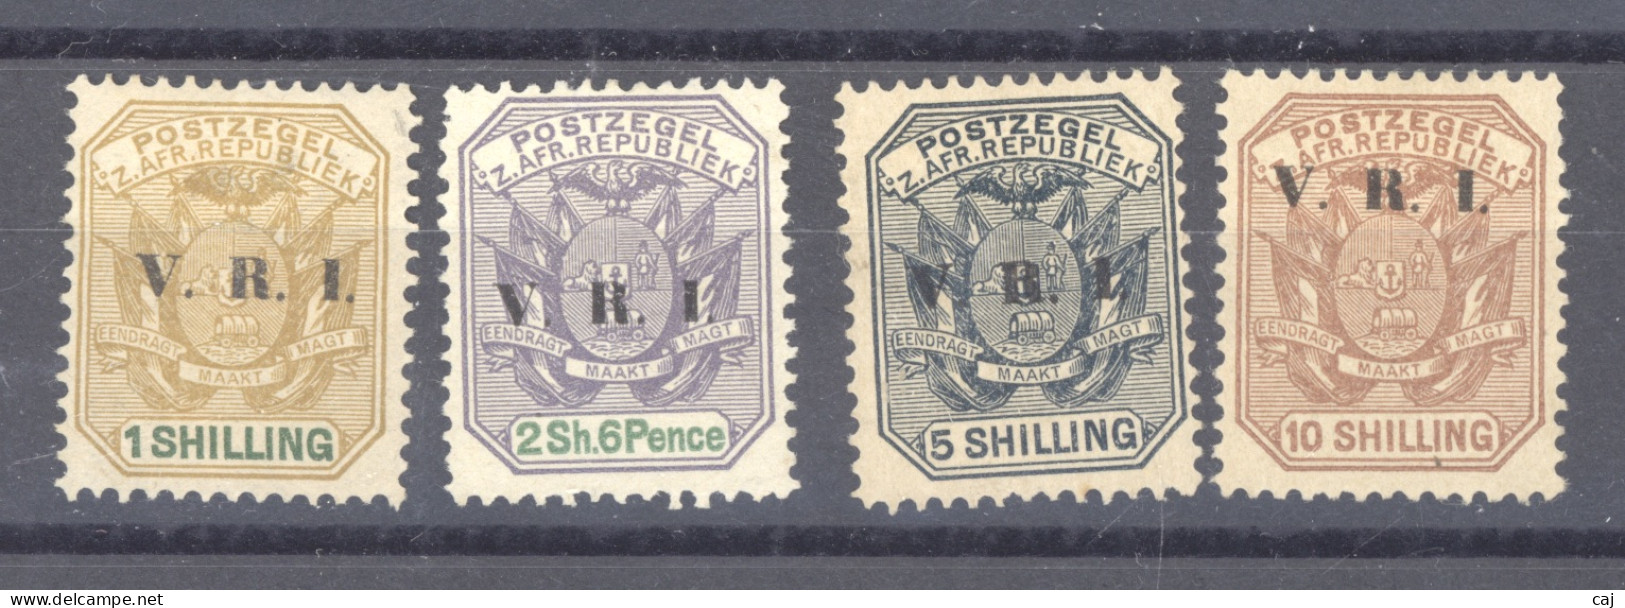 Transvaal  :  Yv  131-34  * - Transvaal (1870-1909)